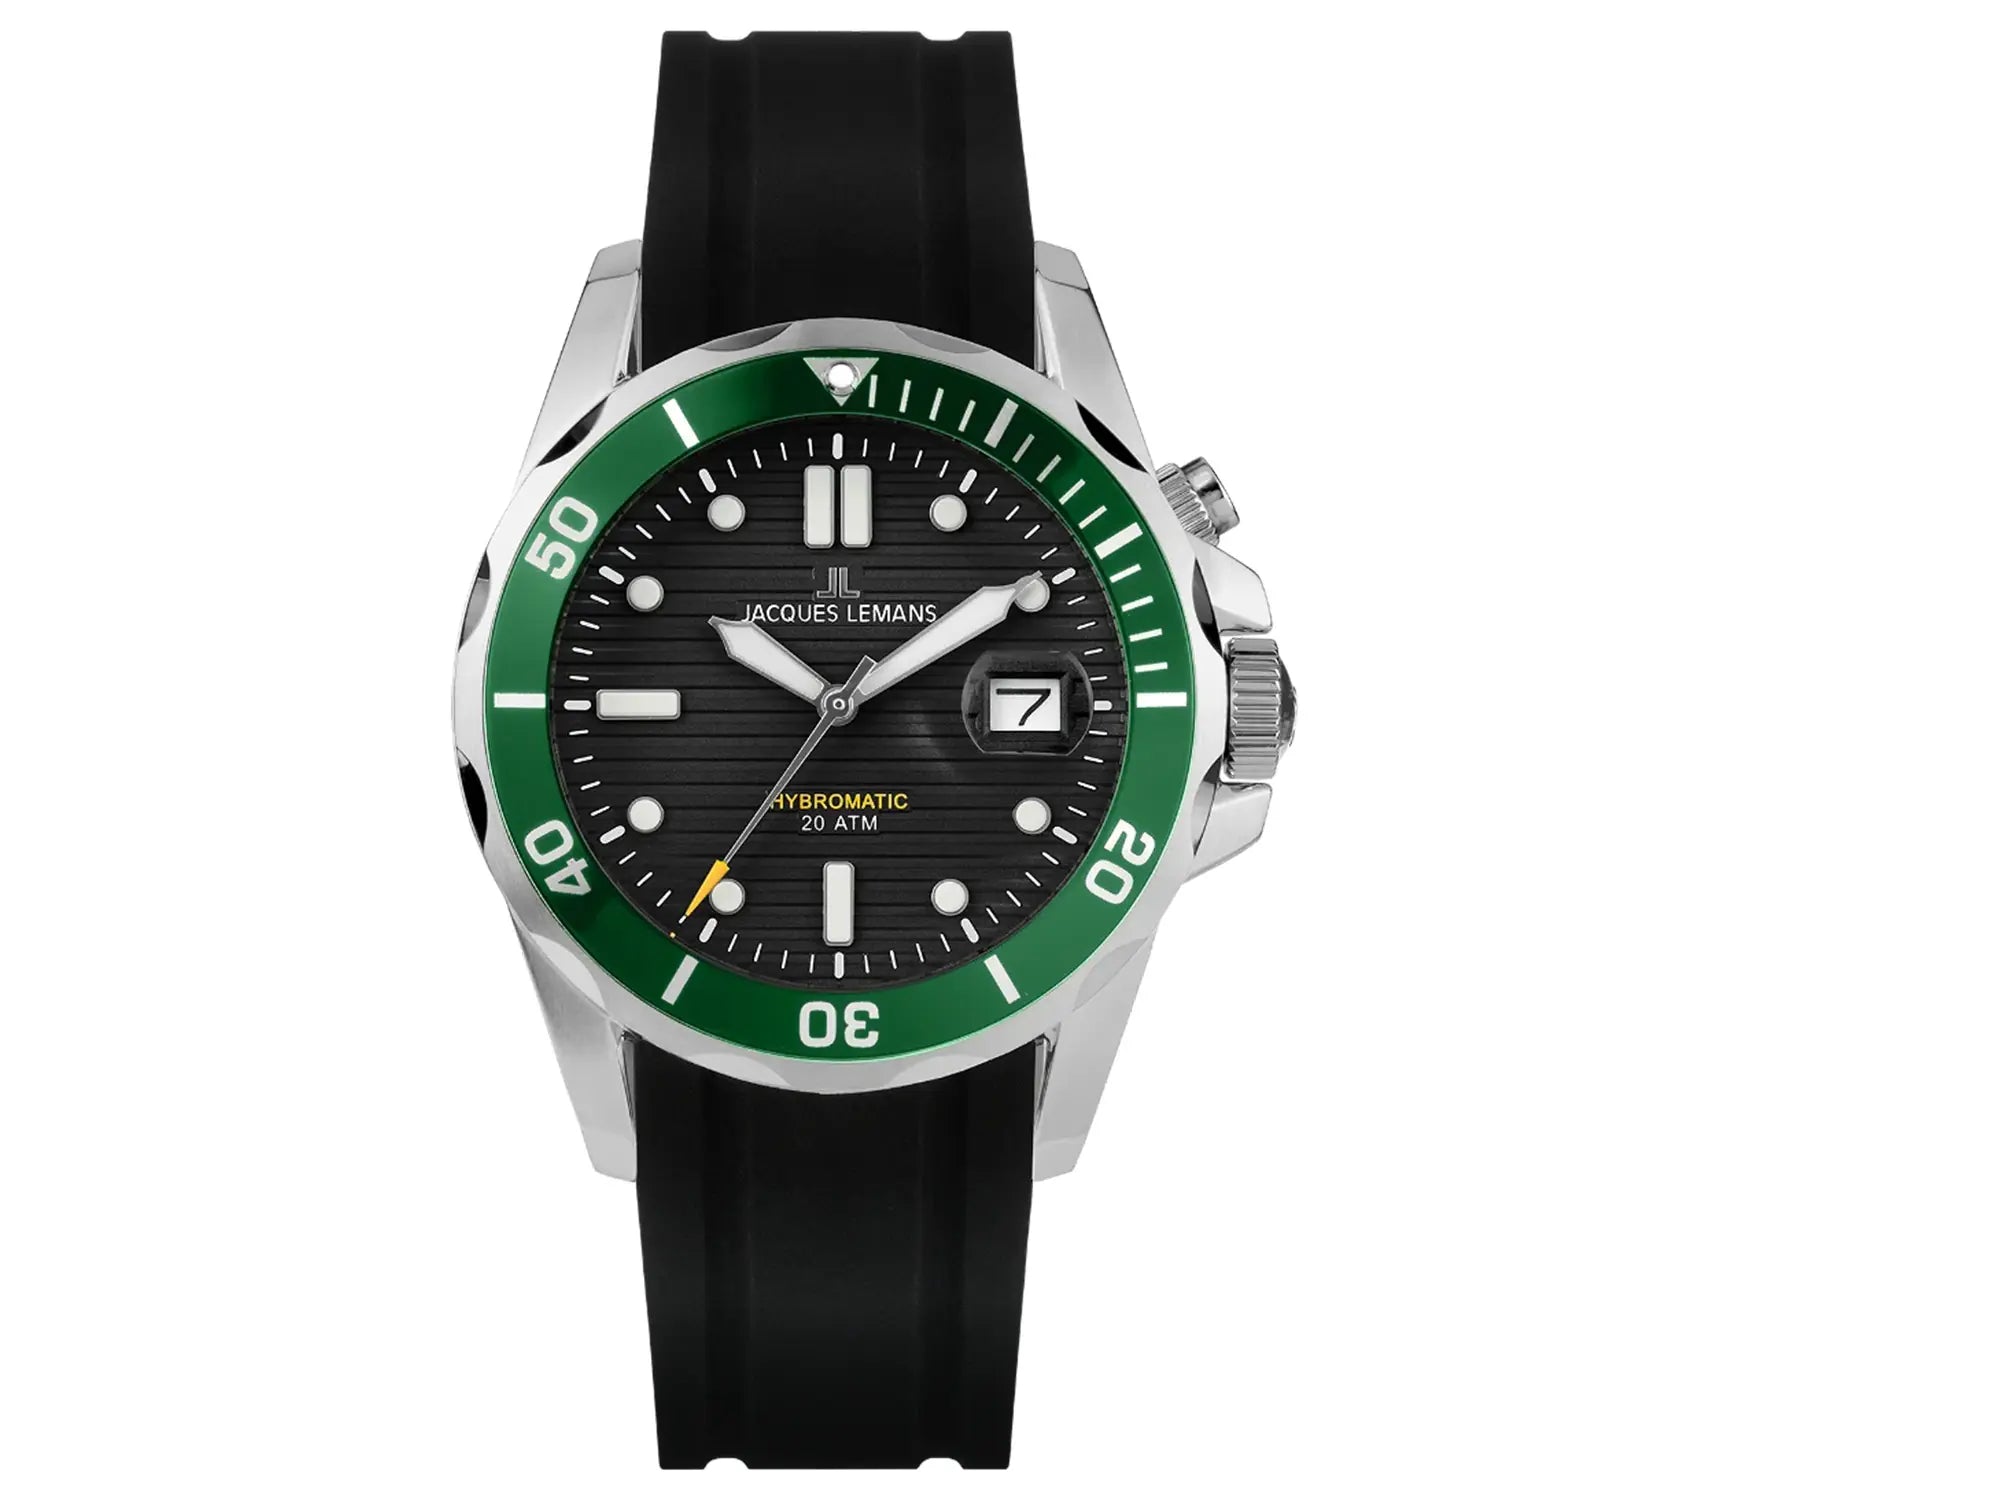 Frontale Ansicht der Jacques Lemans Uhr "Hybromatic" mit schwarzem Zifferblatt, grüner Lünette und braunem Lederband